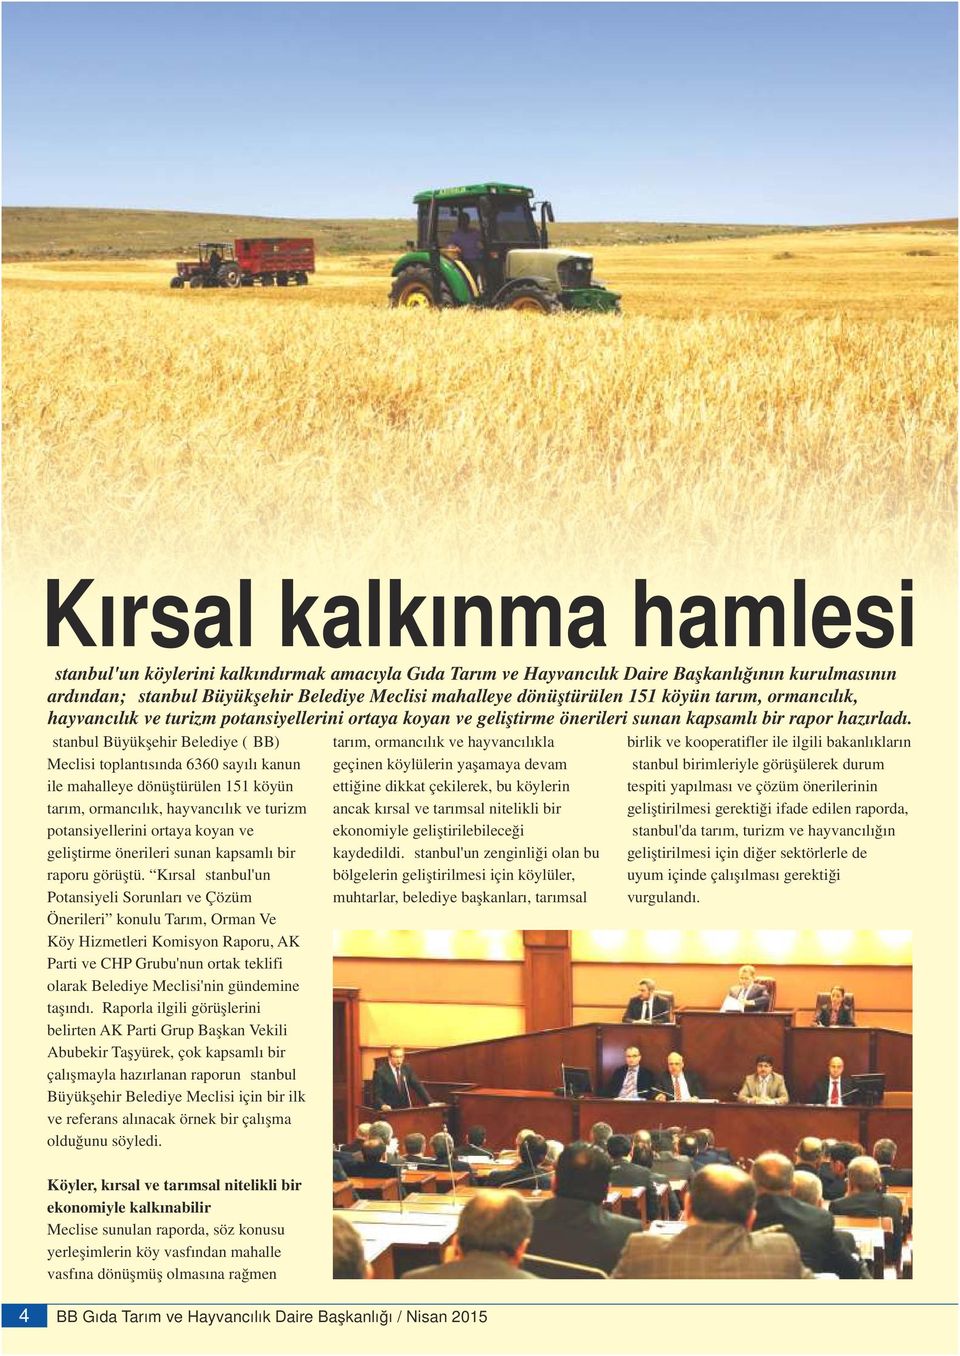 İstanbul Büyükşehir Belediye (İBB) tarım, ormancılık ve hayvancılıkla birlik ve kooperatifler ile ilgili bakanlıkların Meclisi toplantısında 6360 sayılı kanun geçinen köylülerin yaşamaya devam